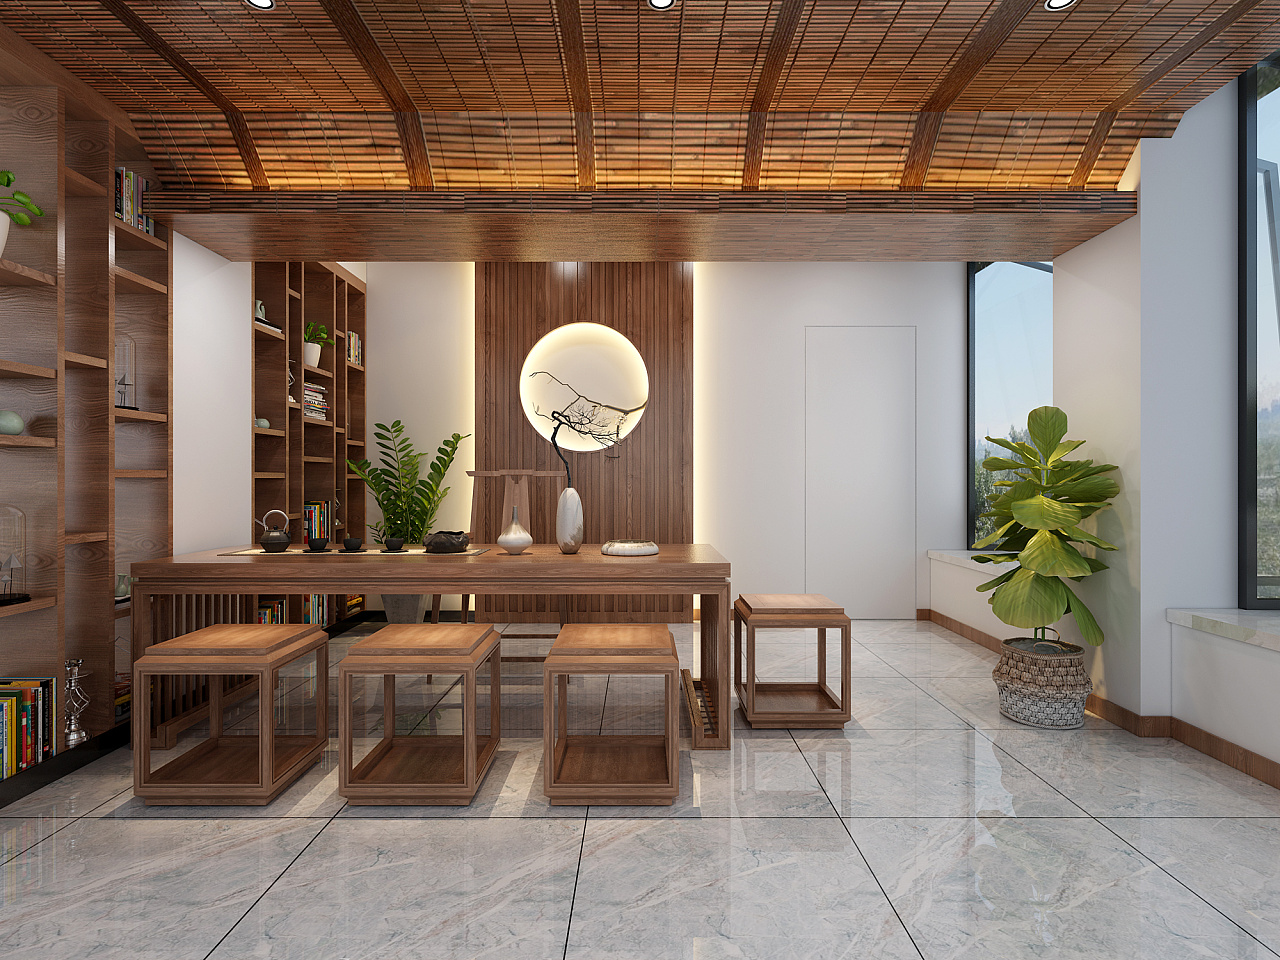 茶室 - 其它风格一室装修效果图 - 陈叶设计效果图 - 每平每屋·设计家